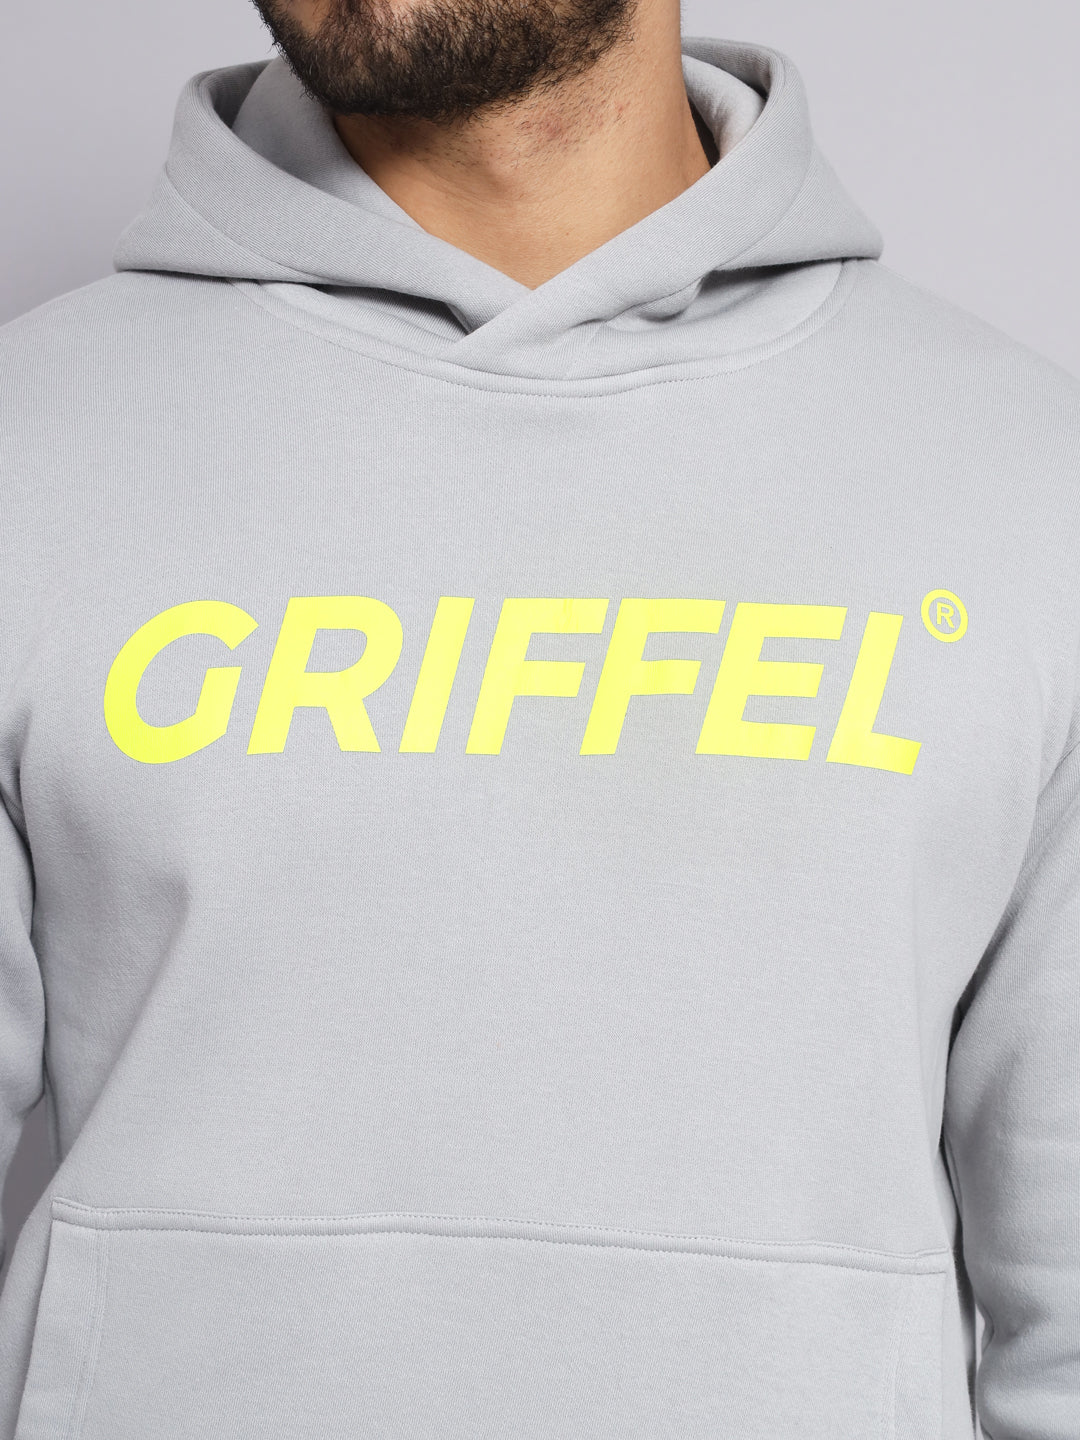 Griffel Men's Anthra Cotton Front Logo Fleece Hoody Sweatshirt with Full Sleeve - griffel